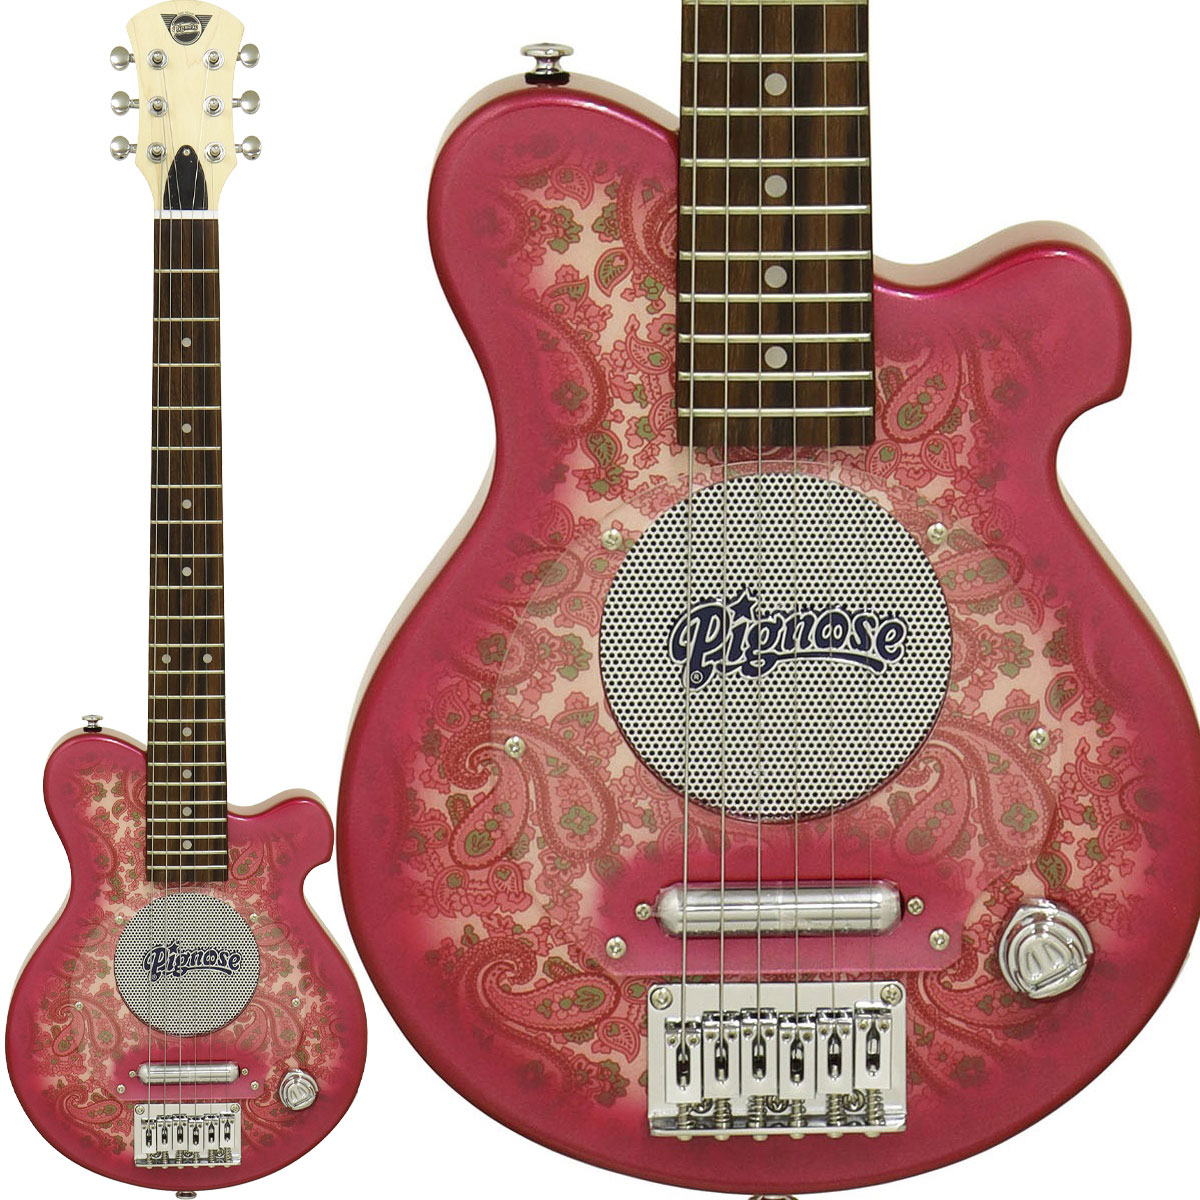 pignose PGG-100 ミニエレキギター 価格 - ギター